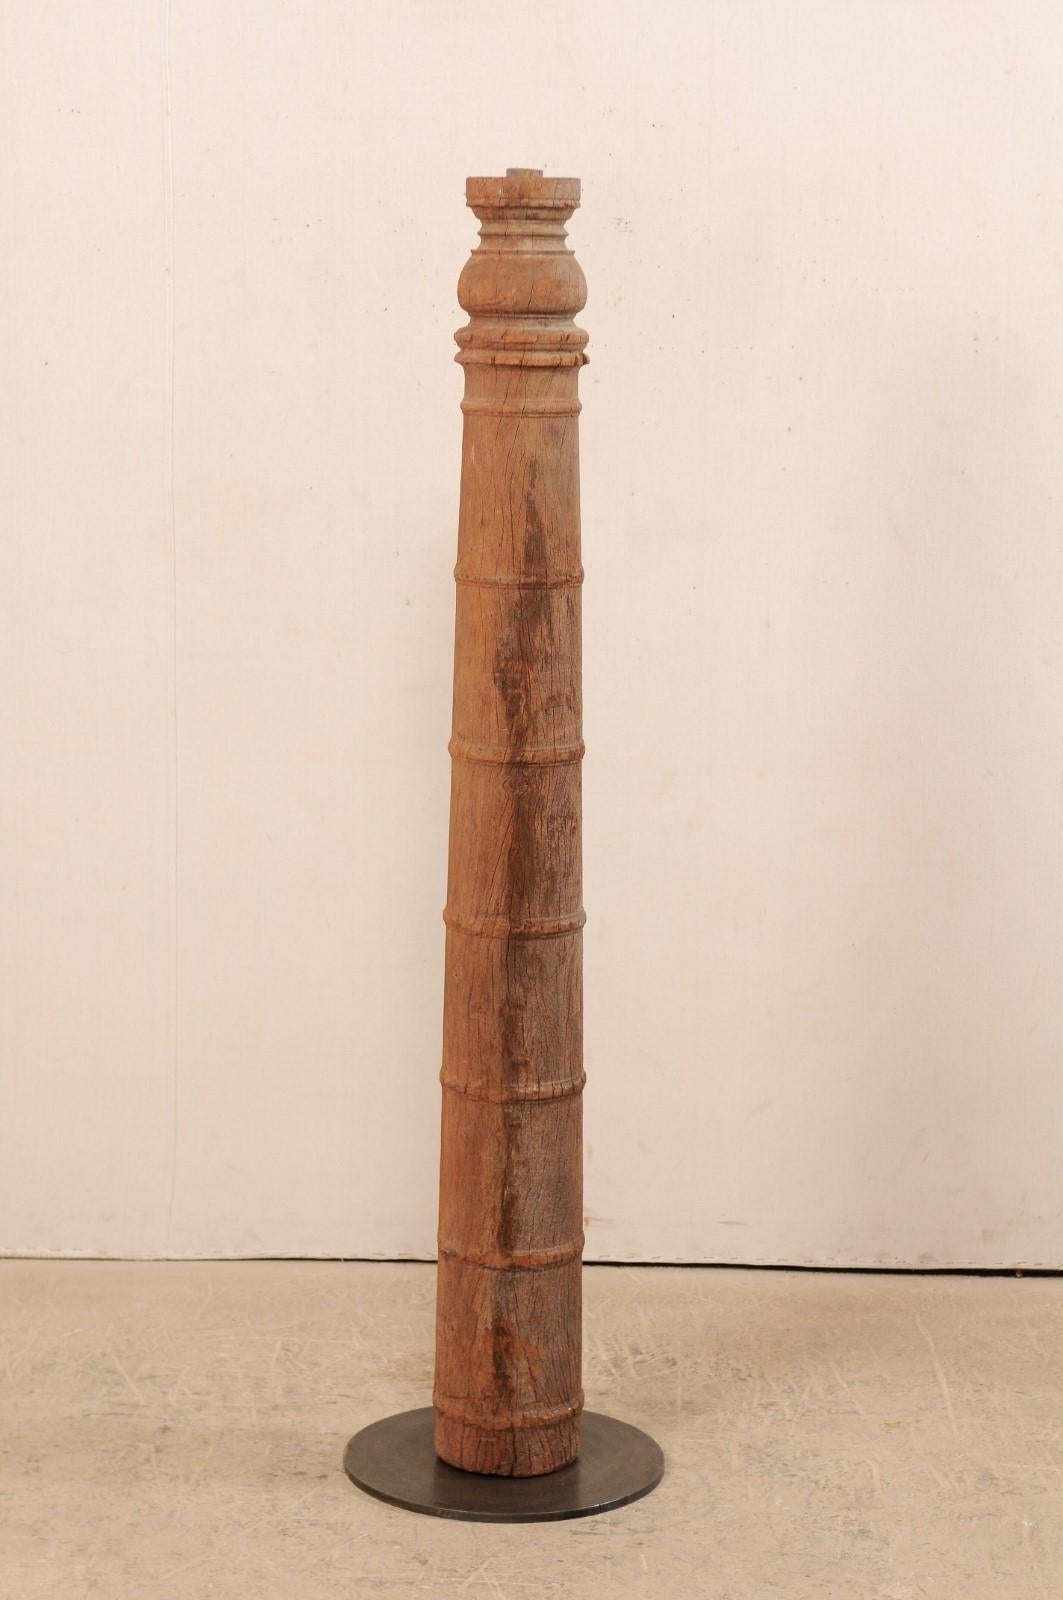 Eine einzelne geschnitzte Holzsäule aus dem 19. Jahrhundert aus der britischen Kolonialzeit mit speziellem Ständer. Diese antike handgeschnitzte hölzerne architektonische Element aus Indien, die etwa 5,5 Meter in der Höhe steht, verfügt über eine